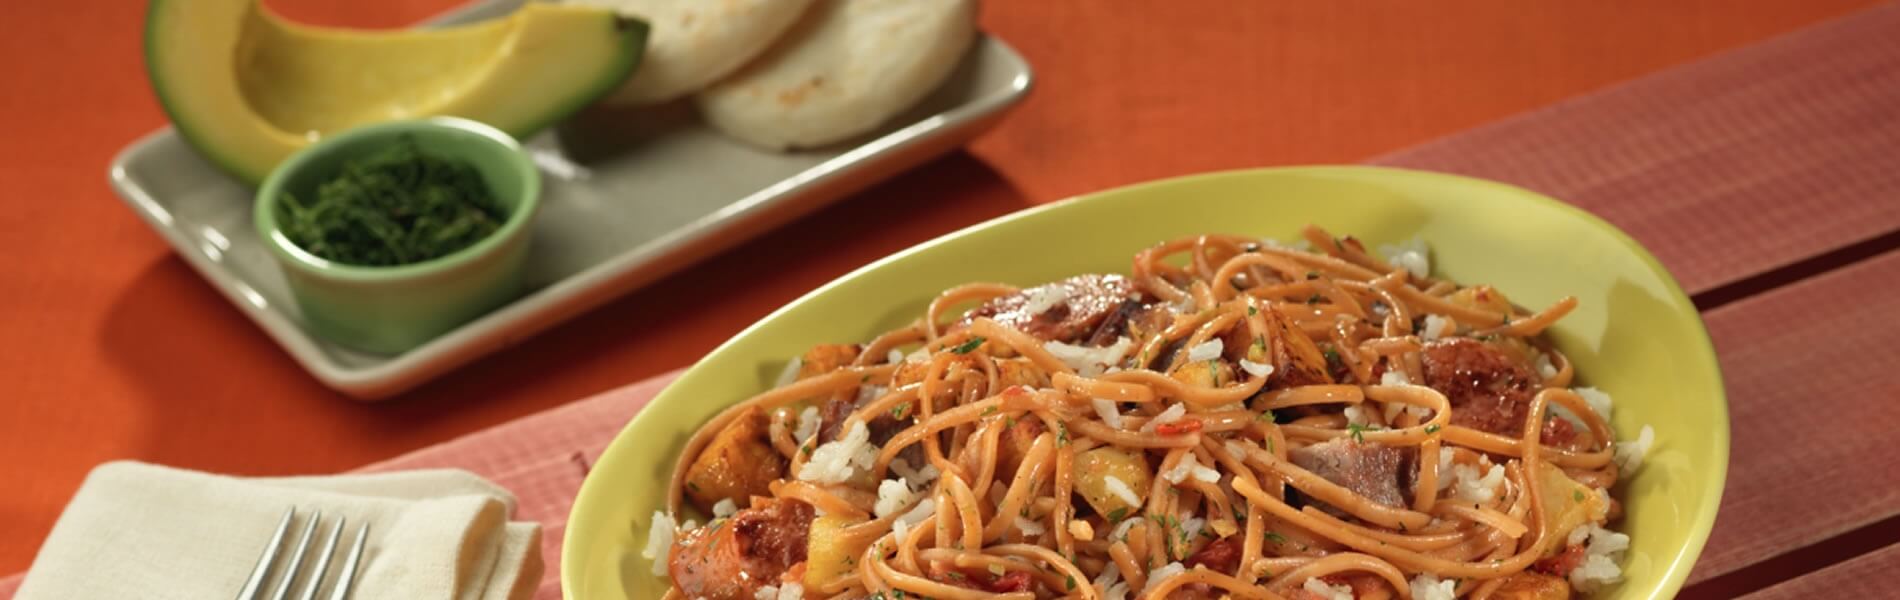 Calentado con Spaghetti Doria sabor chorizo